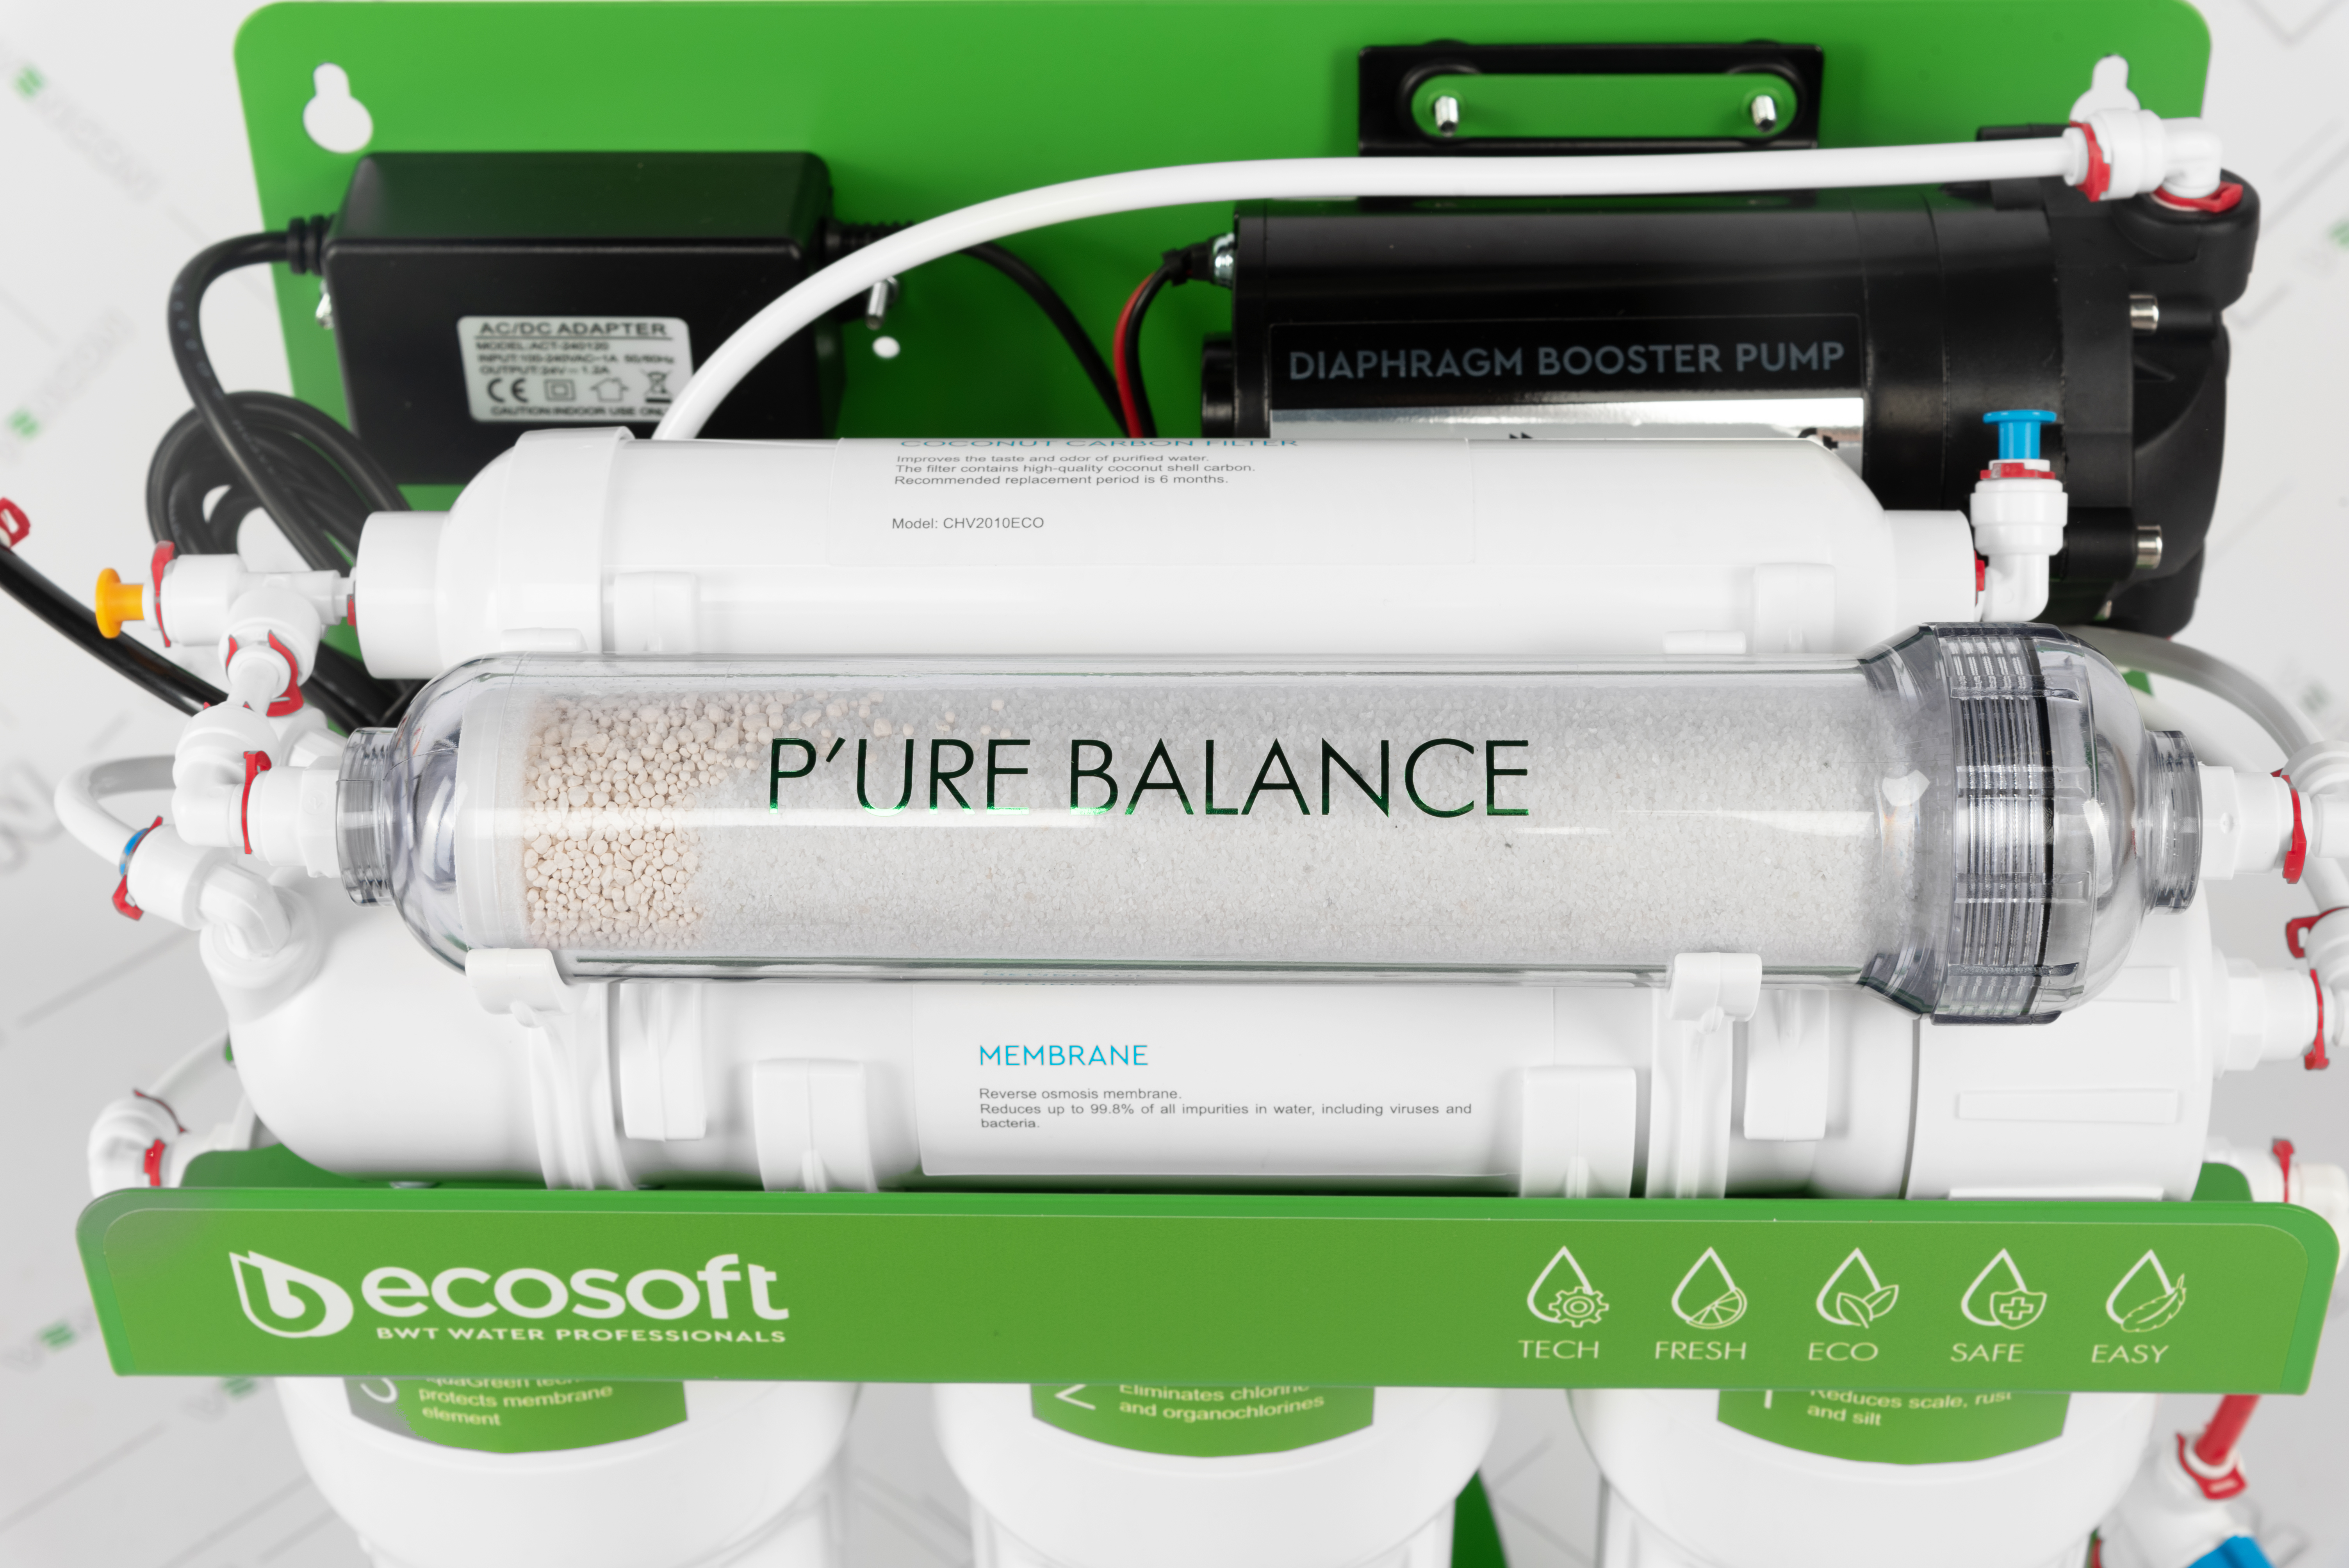 в продаже Фильтр для воды Ecosoft P'ure Balance MO675MBALPSECO на металлической раме с помпой - фото 3